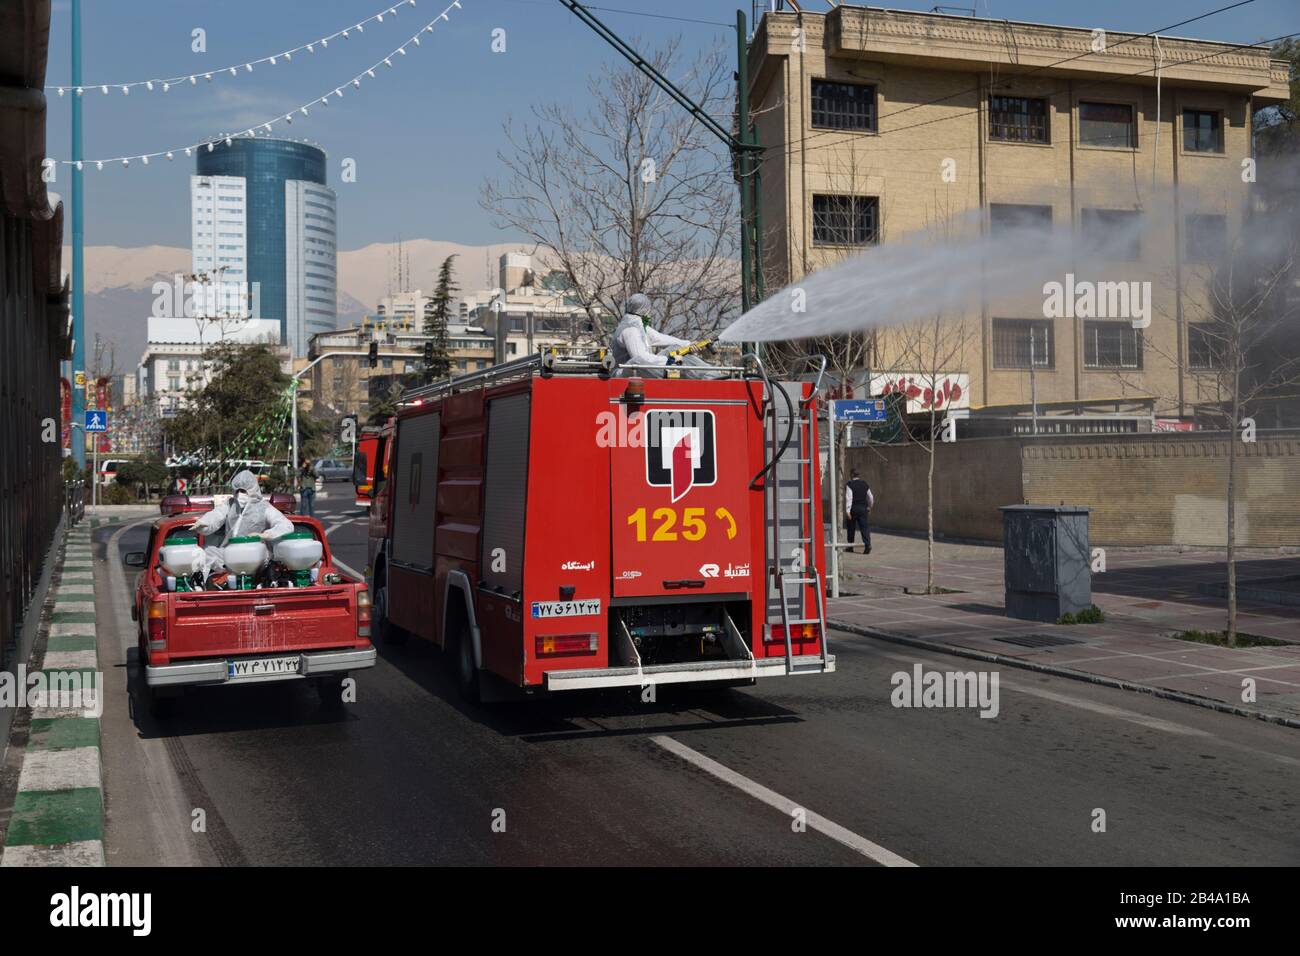 Teherán, Irán. 6 de marzo de 2020. Los bomberos y los trabajadores municipales con trajes de protección desinfectan las calles, autobuses y taxis como medida de precaución para el coronavirus (Covid-19) en la plaza Vanak, en el norte de Teherán, Irán. Funcionarios iraníes cancelaron la oración del viernes por la segunda semana debido a preocupaciones por la propagación del coronavirus y el COVID-19. Según el último informe del Ministerio de Salud, hay 4,747 casos COVID-19 en Irán. 147 personas han muerto hasta ahora. Un portavoz del Ministerio de Salud advirtió que las autoridades podrían utilizar una "fuerza" no especificada para detener los viajes entre las principales ciudades. (Imagen De Crédito: © Ro Foto de stock